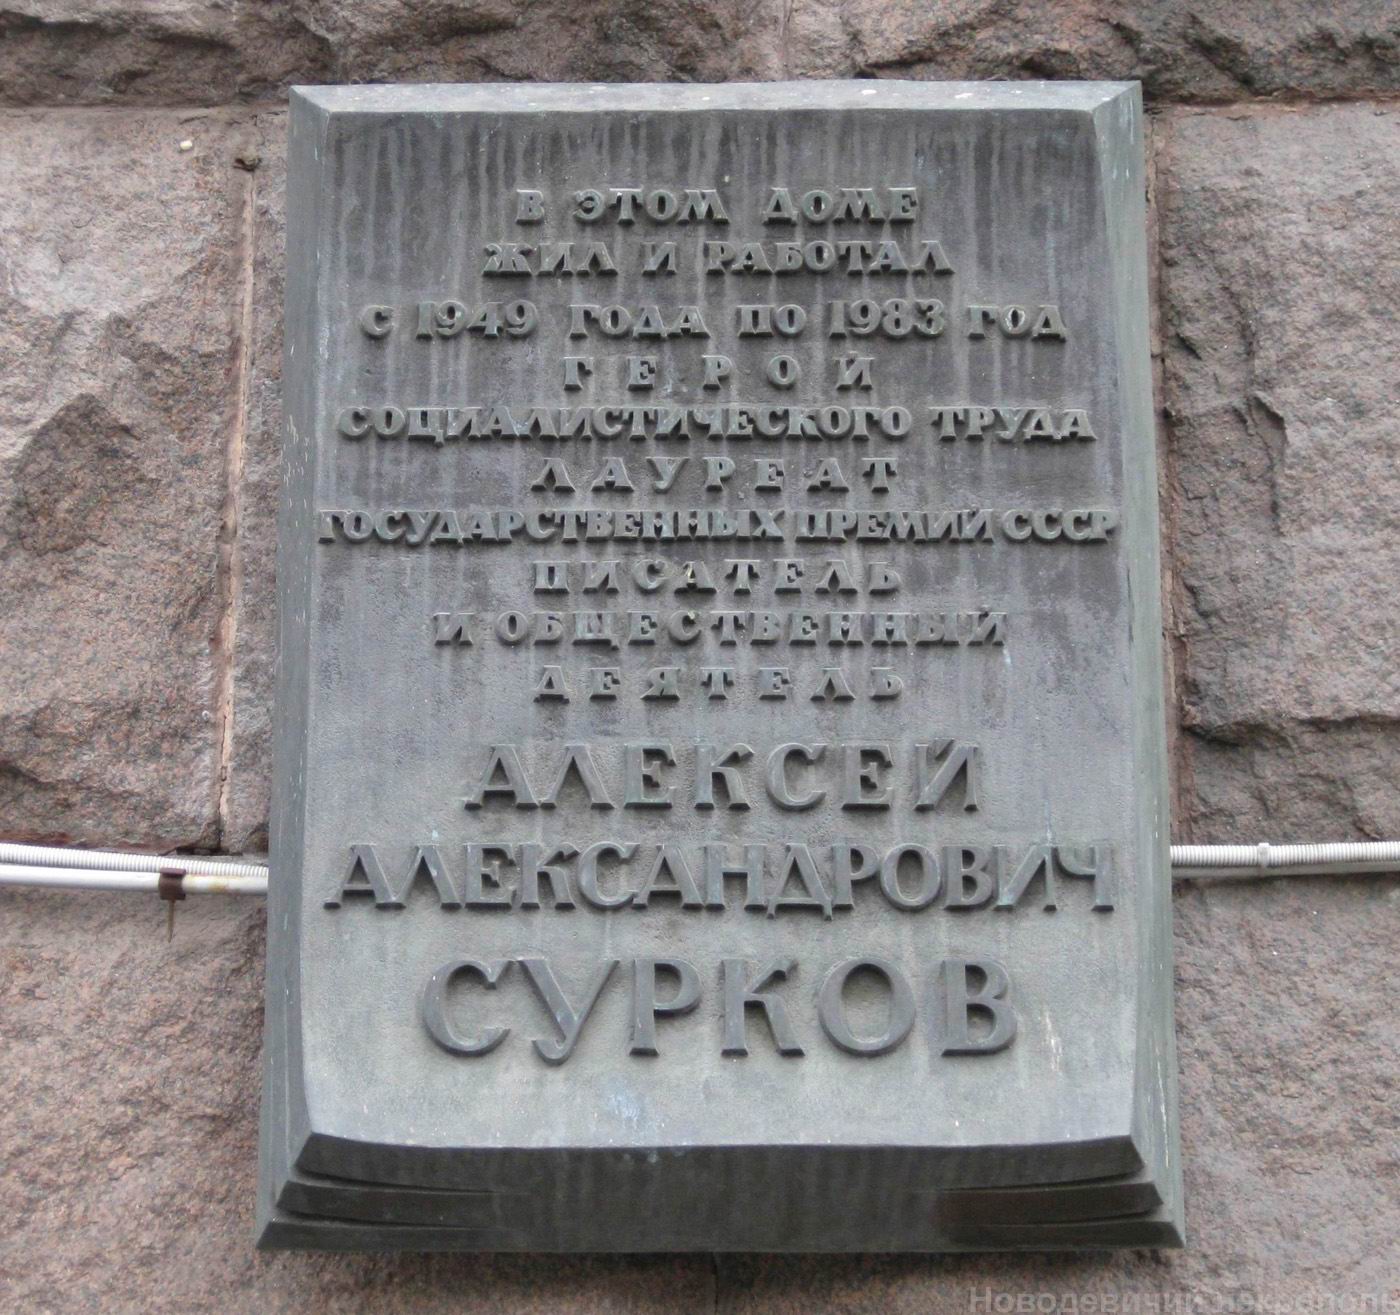 Мемориальная доска Суркову А.А. (1899-1983), арх. В.В.Степанов, на Тверской улице, дом 19, открыта в 1986.